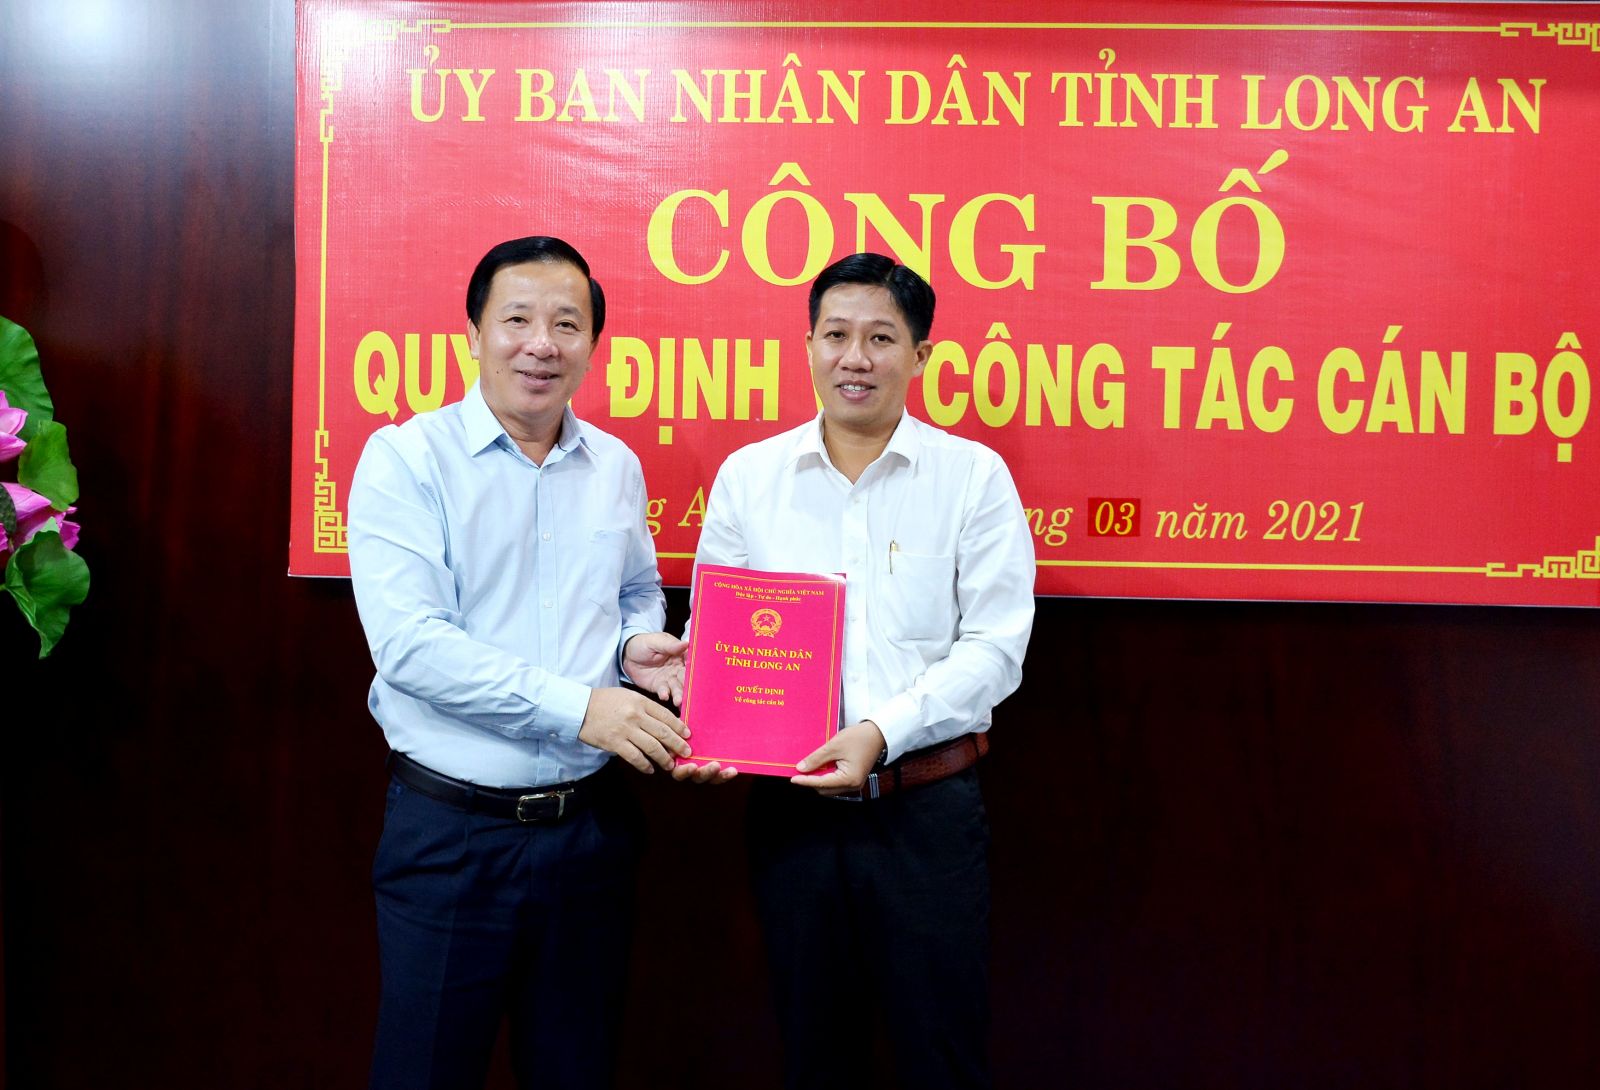 Chủ tịch UBND tỉnh Nguyễn Văn Út (trái) trao quyết định bổ nhiệm Phó Giám đốc Sở Giao thông Vận tải cho đồng chí Trần Thiện Trúc. (Ảnh: Kiên Định)